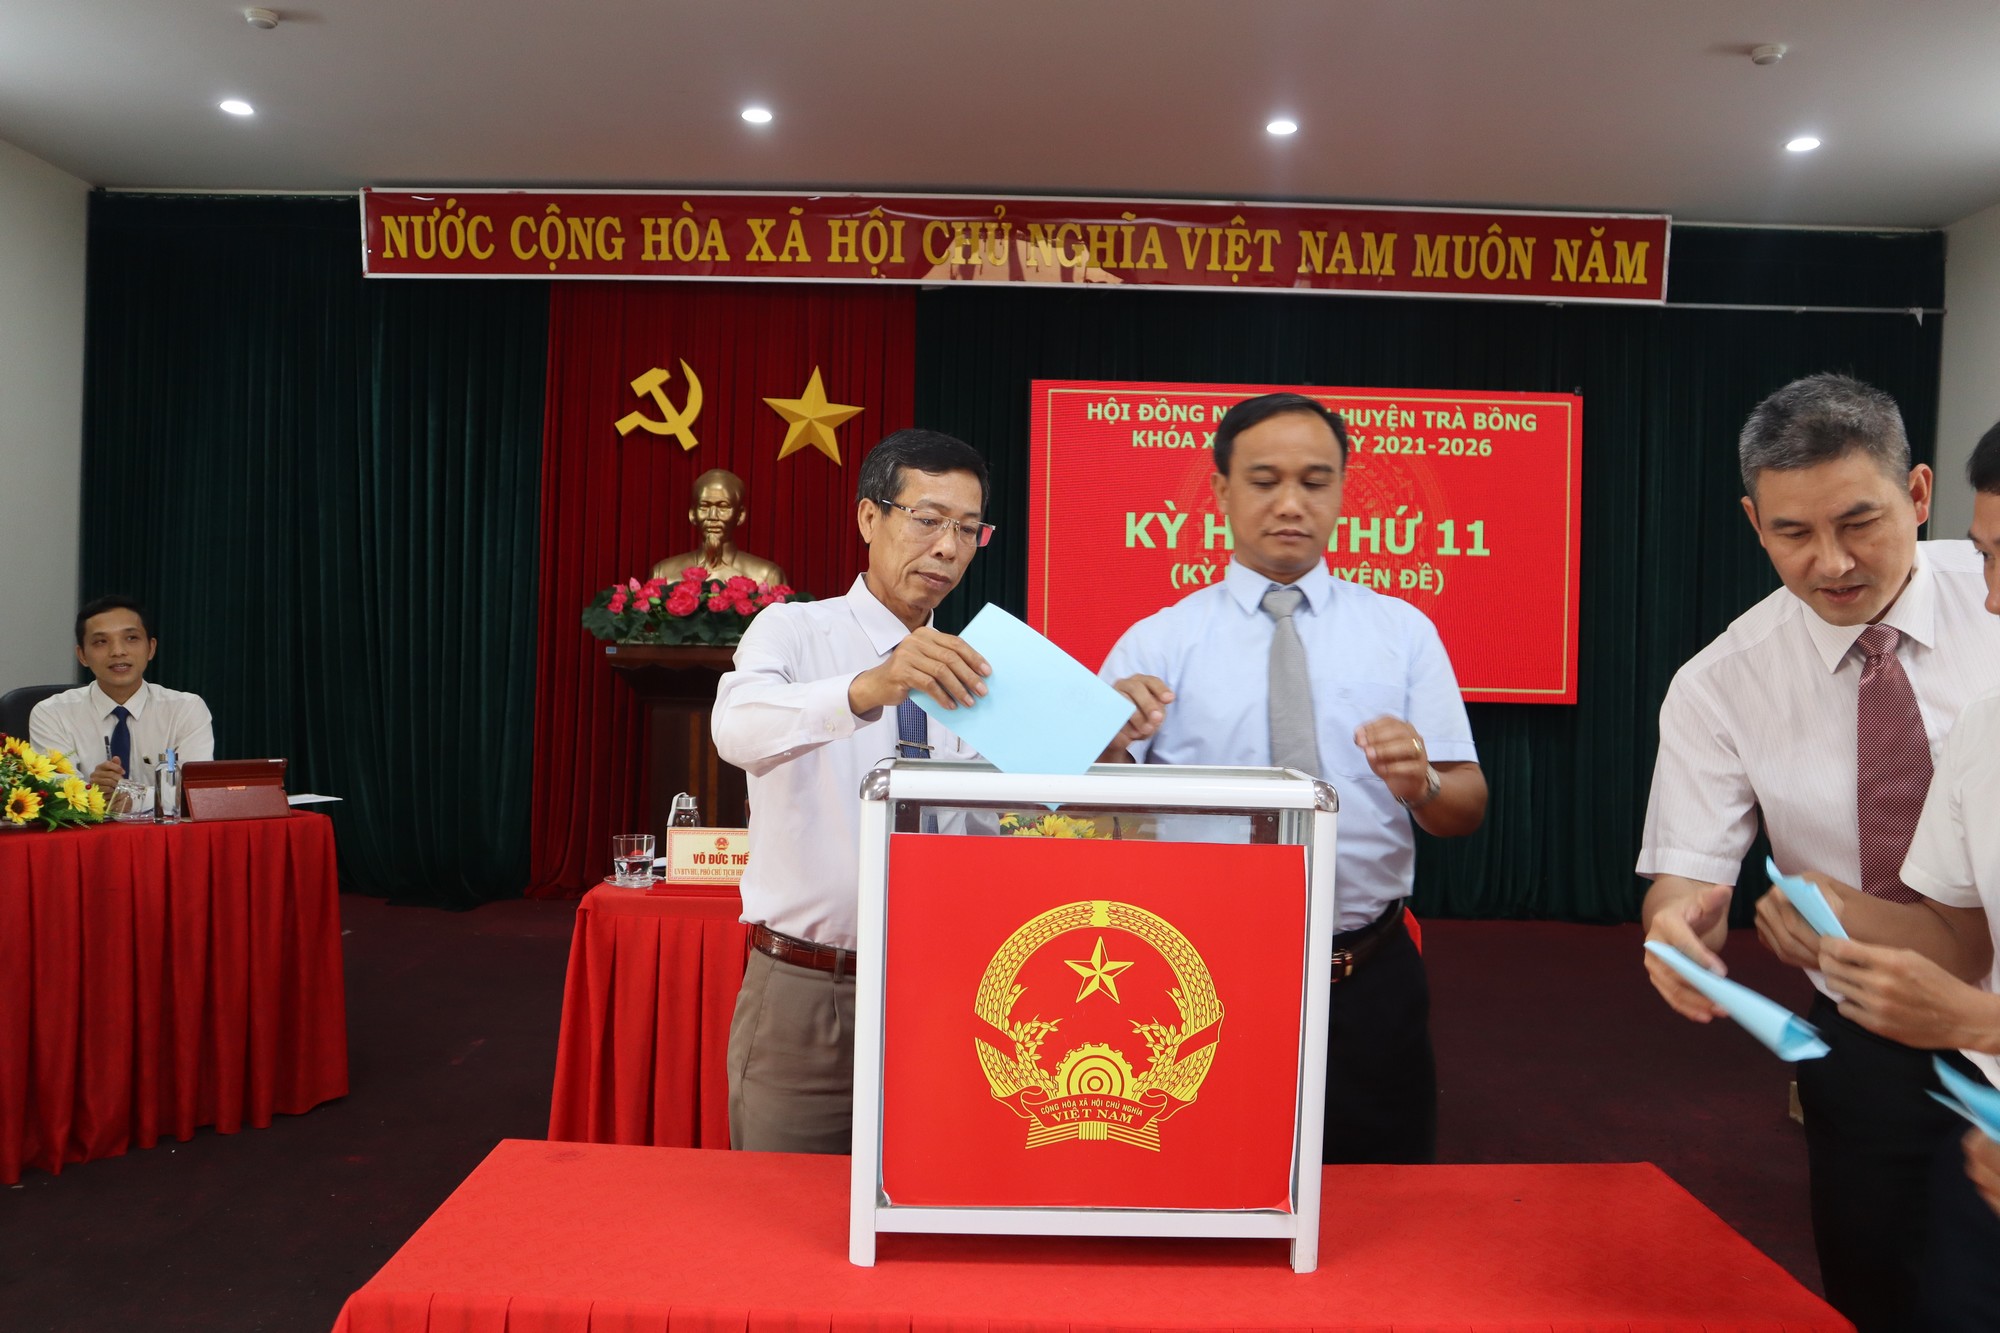 Hội đồng nhân dân huyện Trà Bồng khoá XII, nhiệm kỳ 2021-2026 tổ chức kỳ họp thứ 11(Kỳ họp chuyên đề)